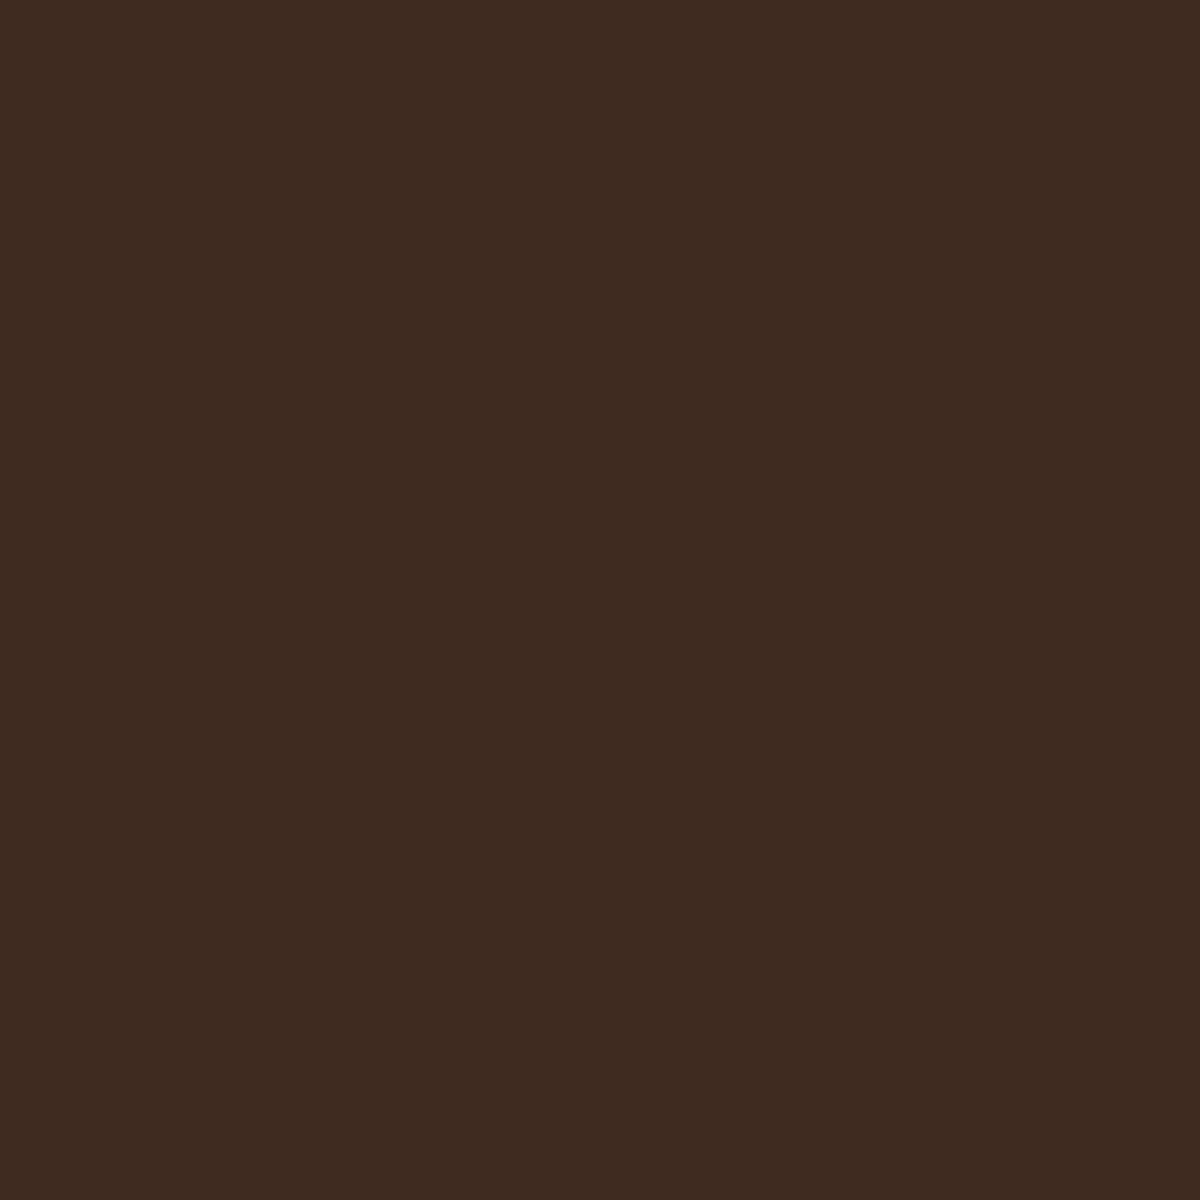 Χρώμα ξύλου Little Greene | Spanish Brown 32 Χρώμα Εμποτισμού Νερού LITTLE GREENE - SPANISH BROWN EH (32) 2,5lt 91078